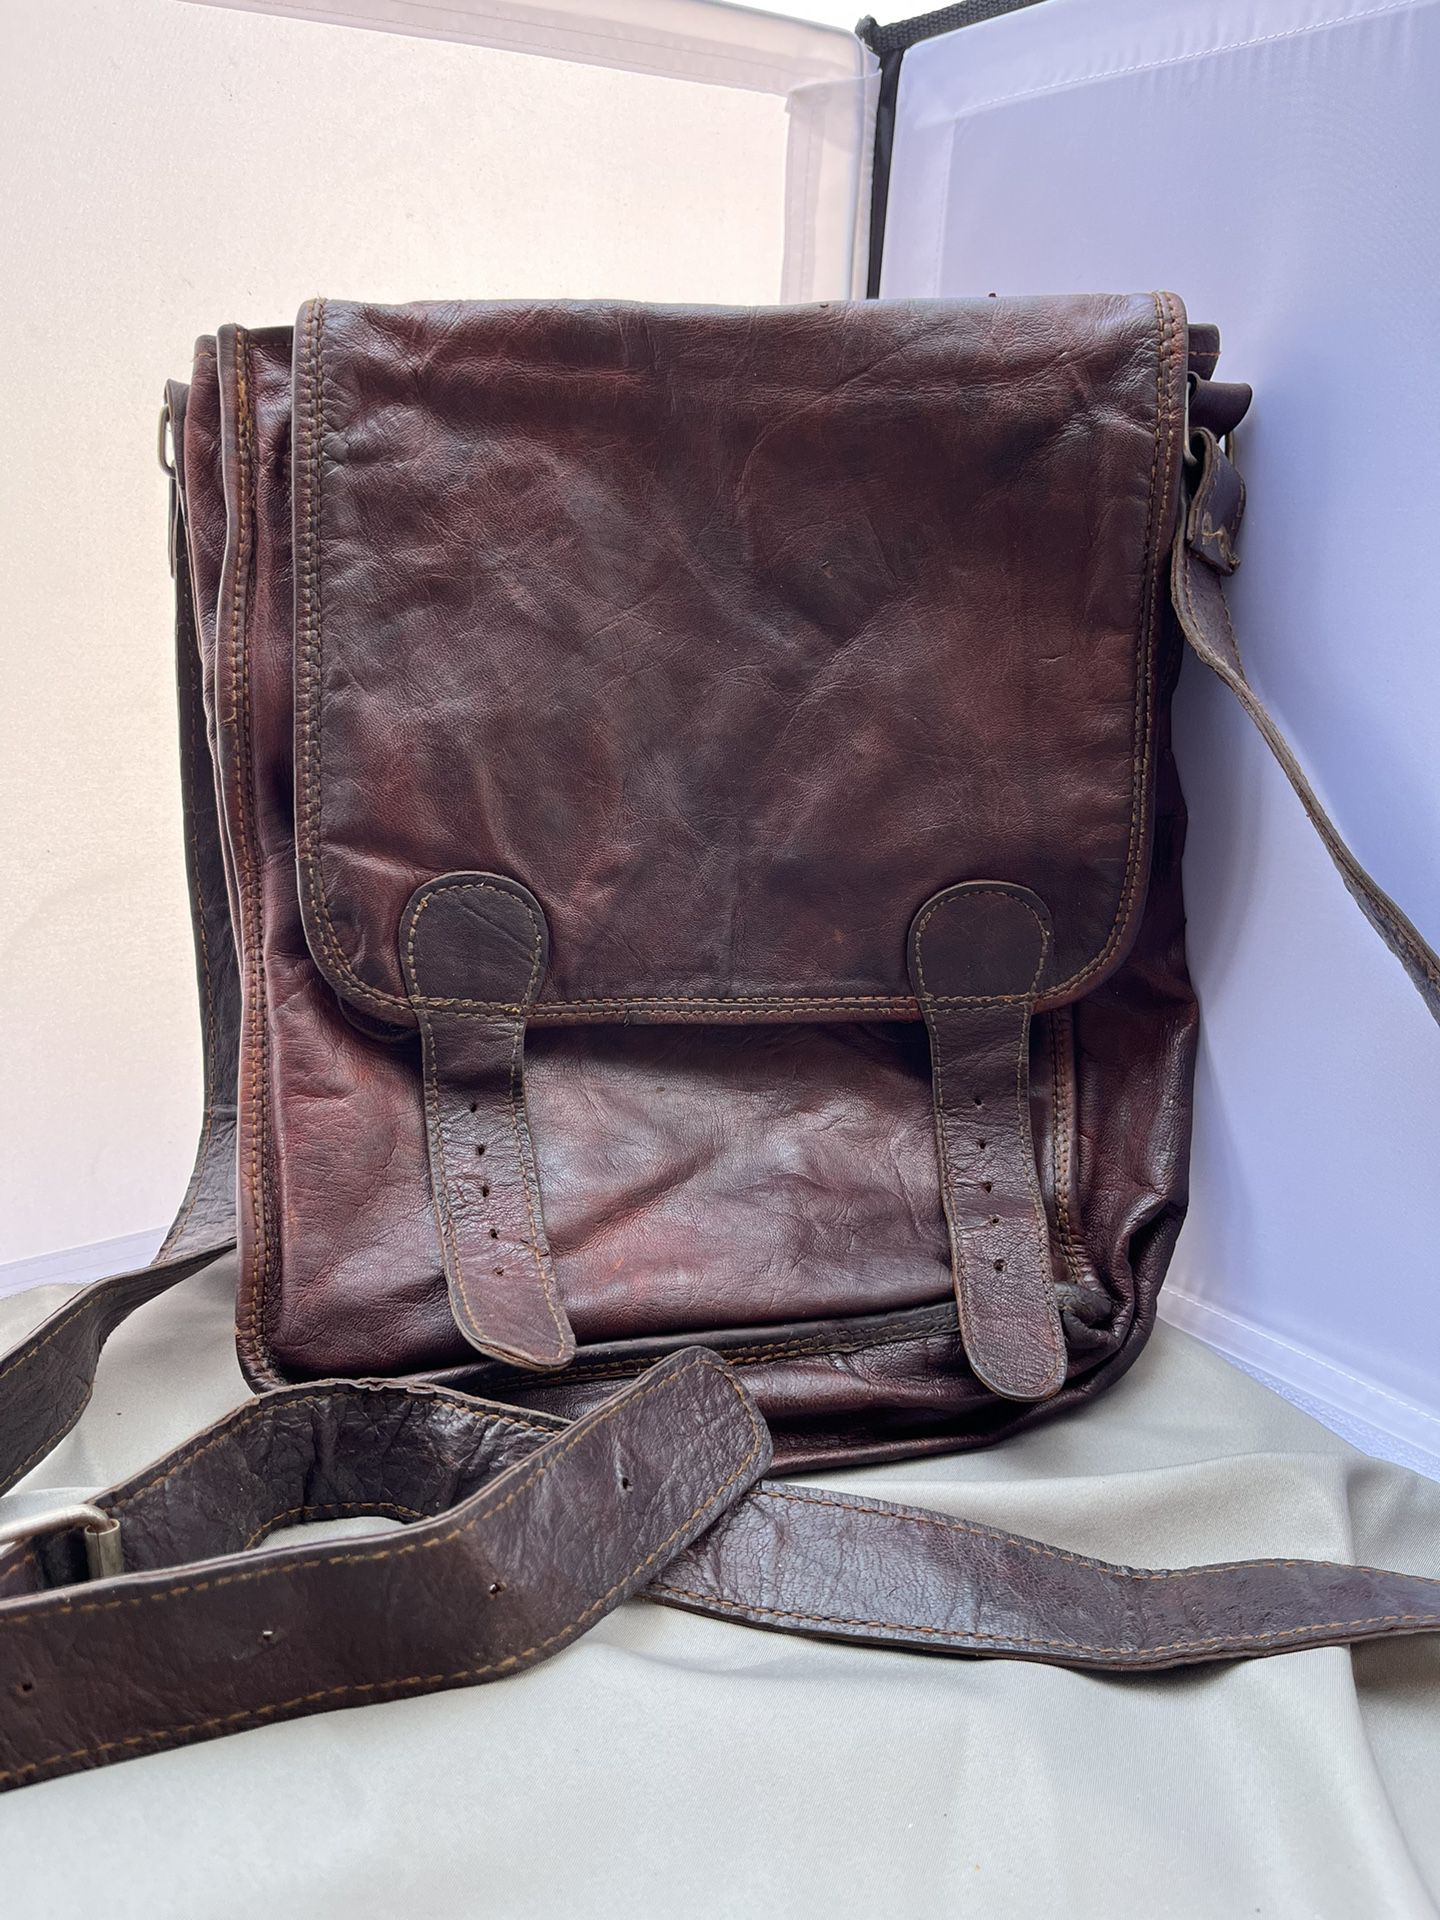 Vintage Leather Messenger Bag 💼 